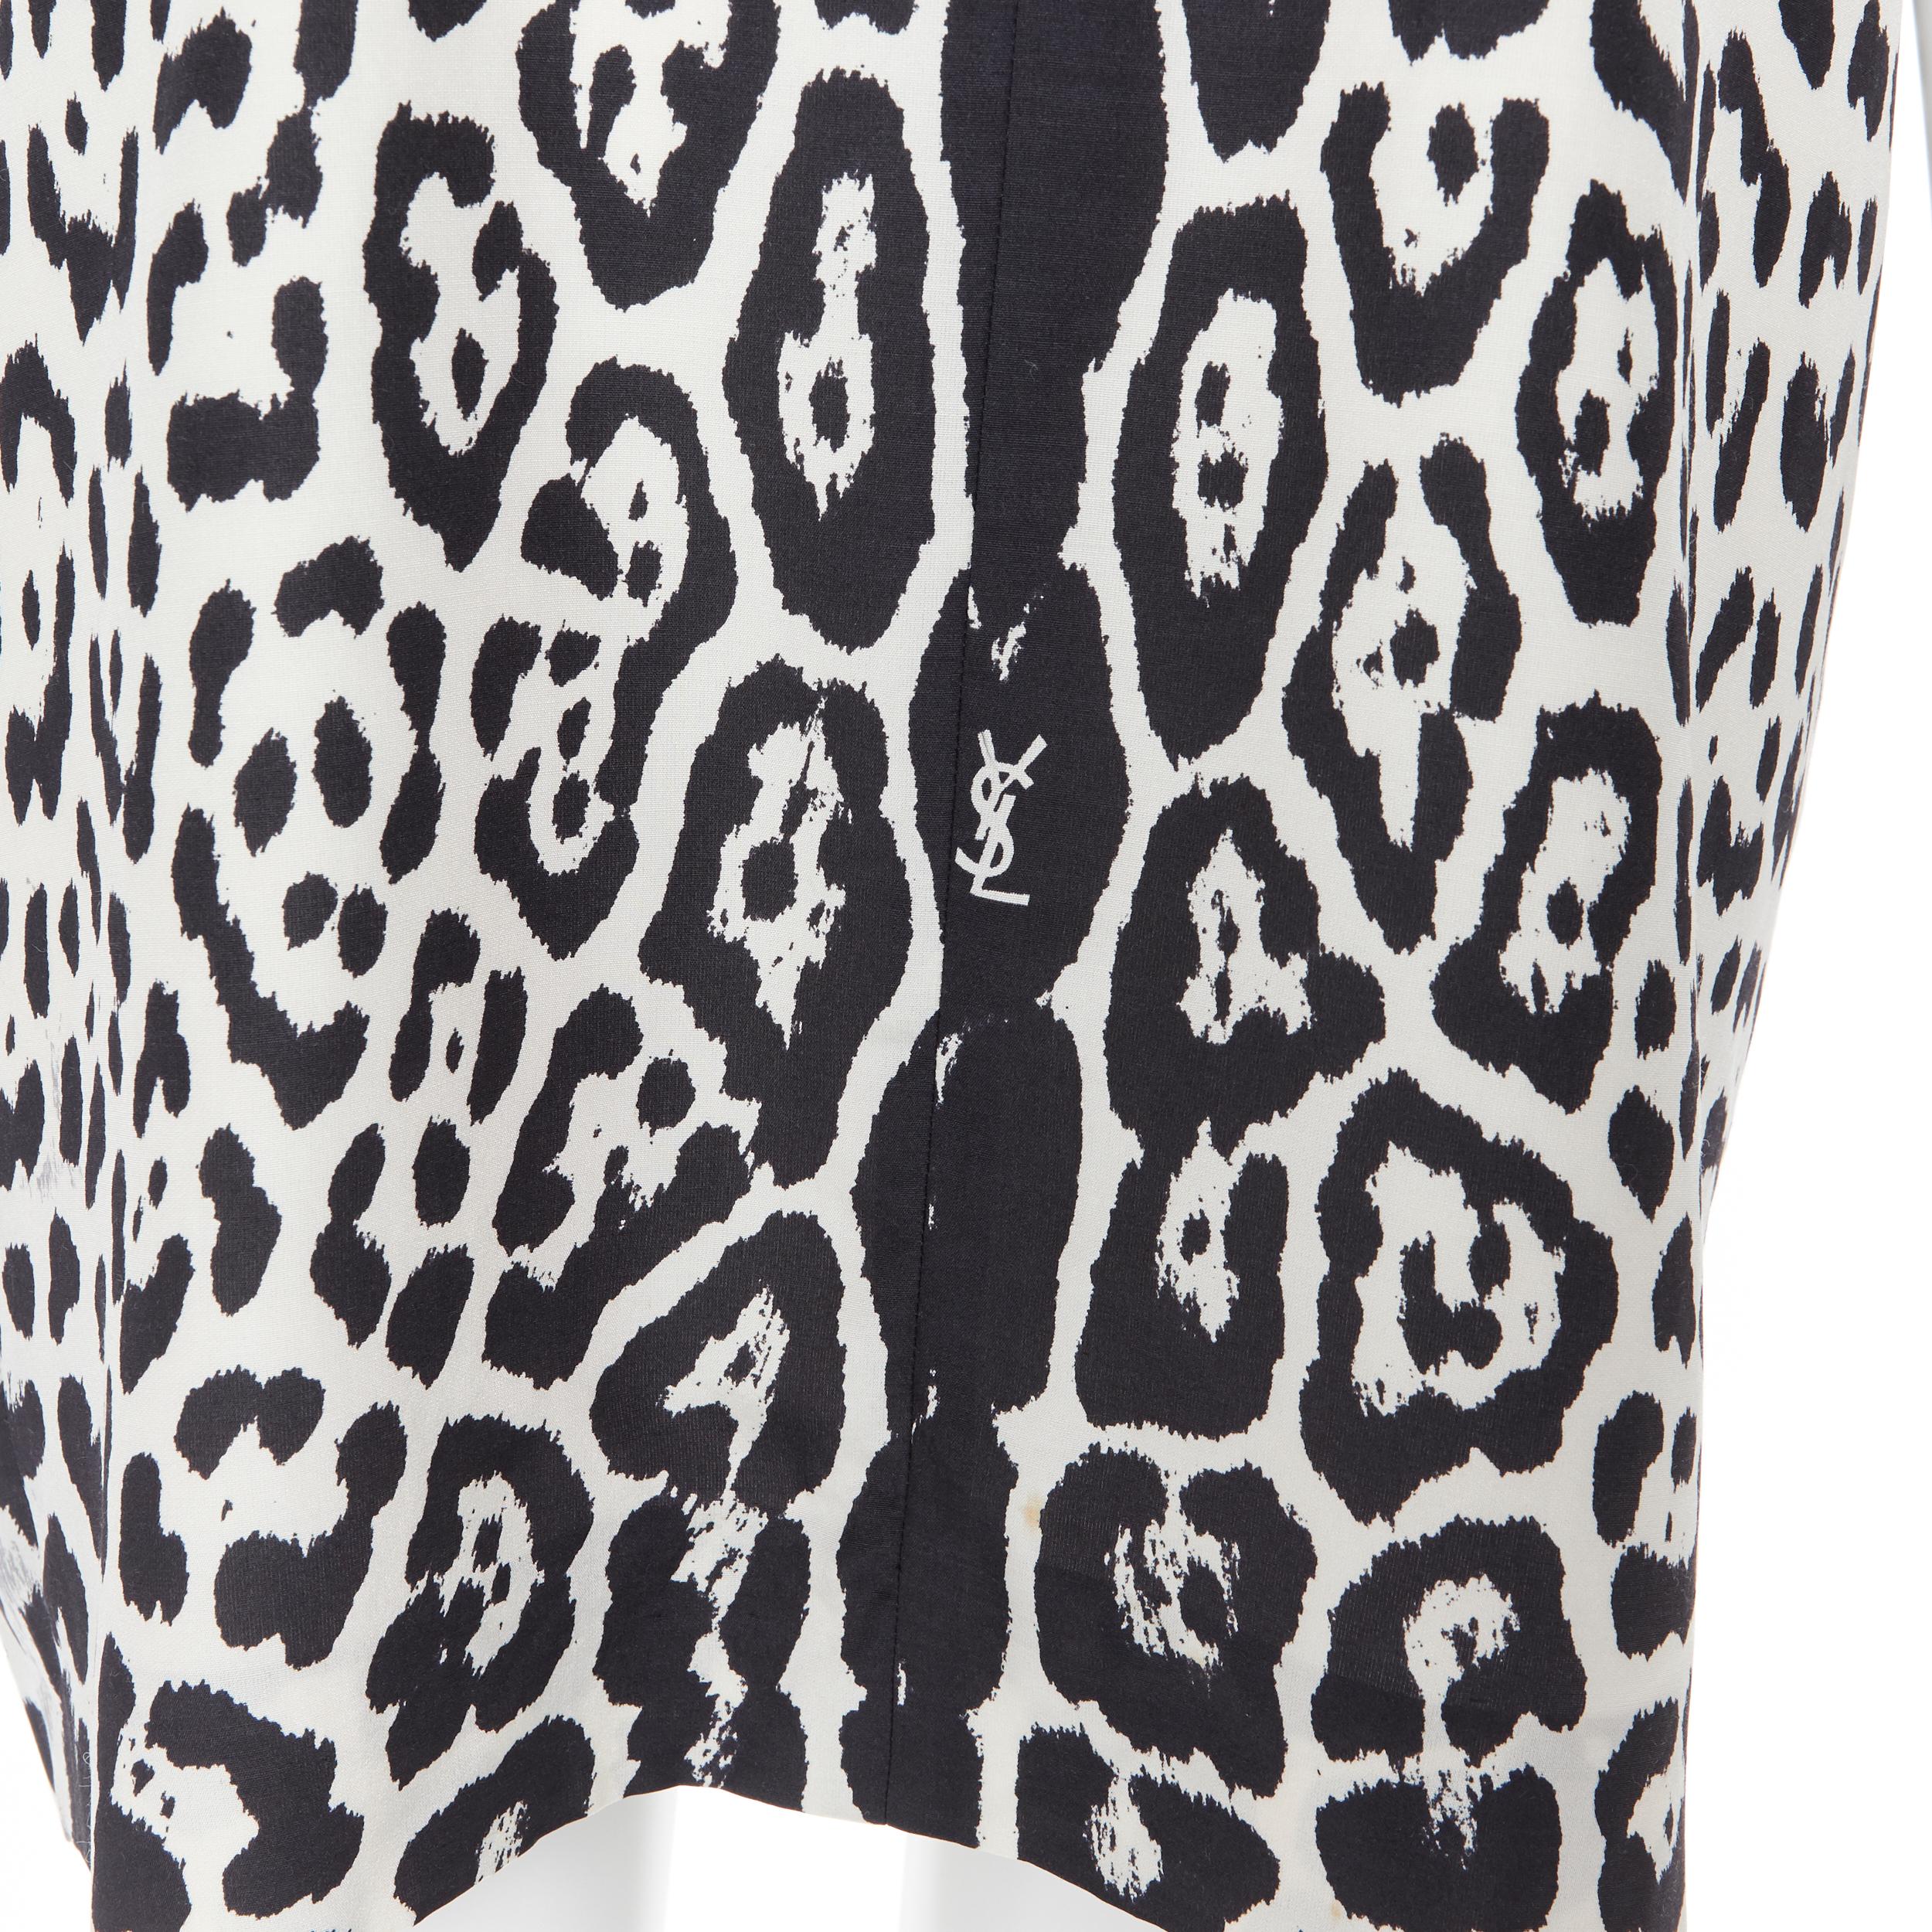 YVES SAINT LAURENT 2012 100% silk black white leopard spot casual dress FR38
Brand: Yves Saint Laurent
Designer: Stefano Pilati
Collection: 2012
Model Name / Style: Silk dress
Material: Silk
Color: Black, white
Pattern: Leopard
Extra Detail: V-neck.